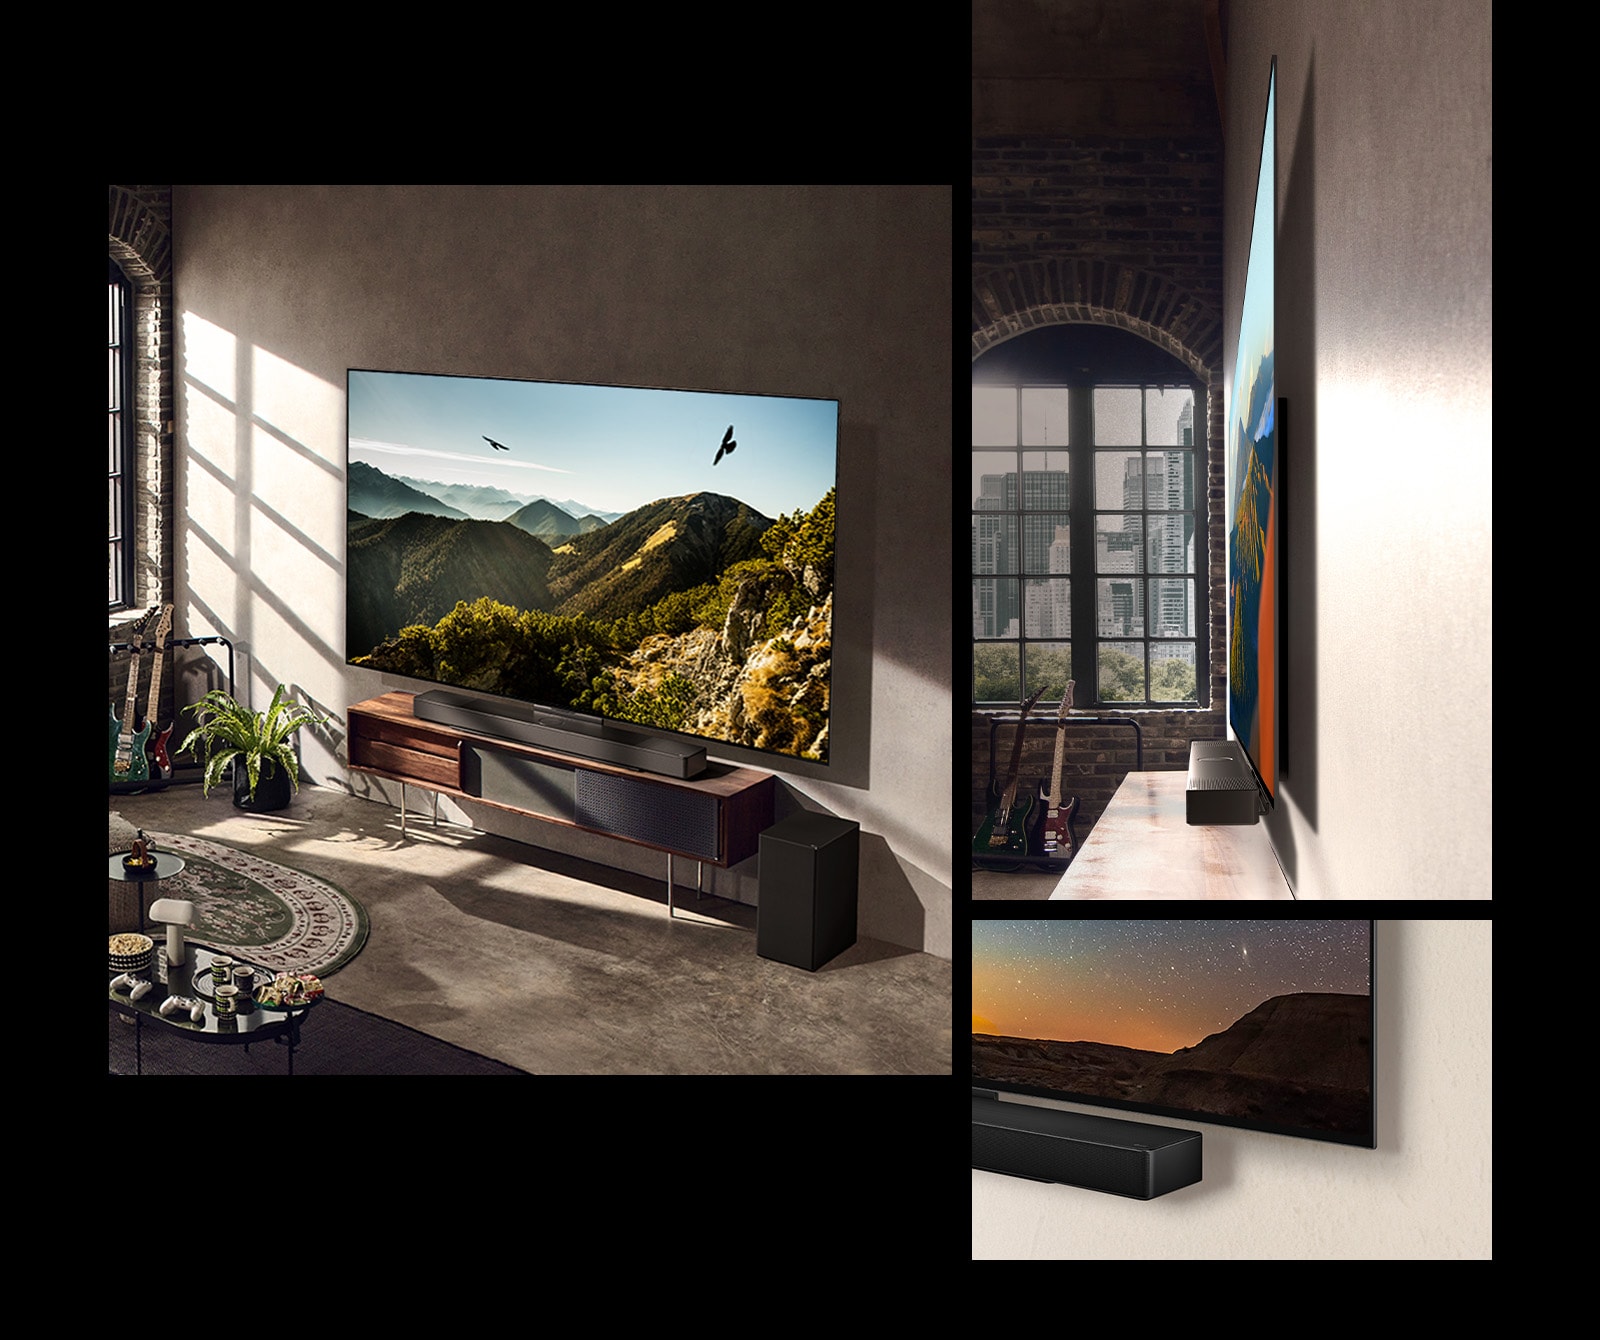 Зображення LG OLED C3 зі звуковою панеллю на стіні у художньо оформленій кімнаті.  Дисплей тонкого дизайну LG OLED C3 збоку перед вікном із видом на місто.  Нижній кут LG OLED C3 та динамік звукової панелі.